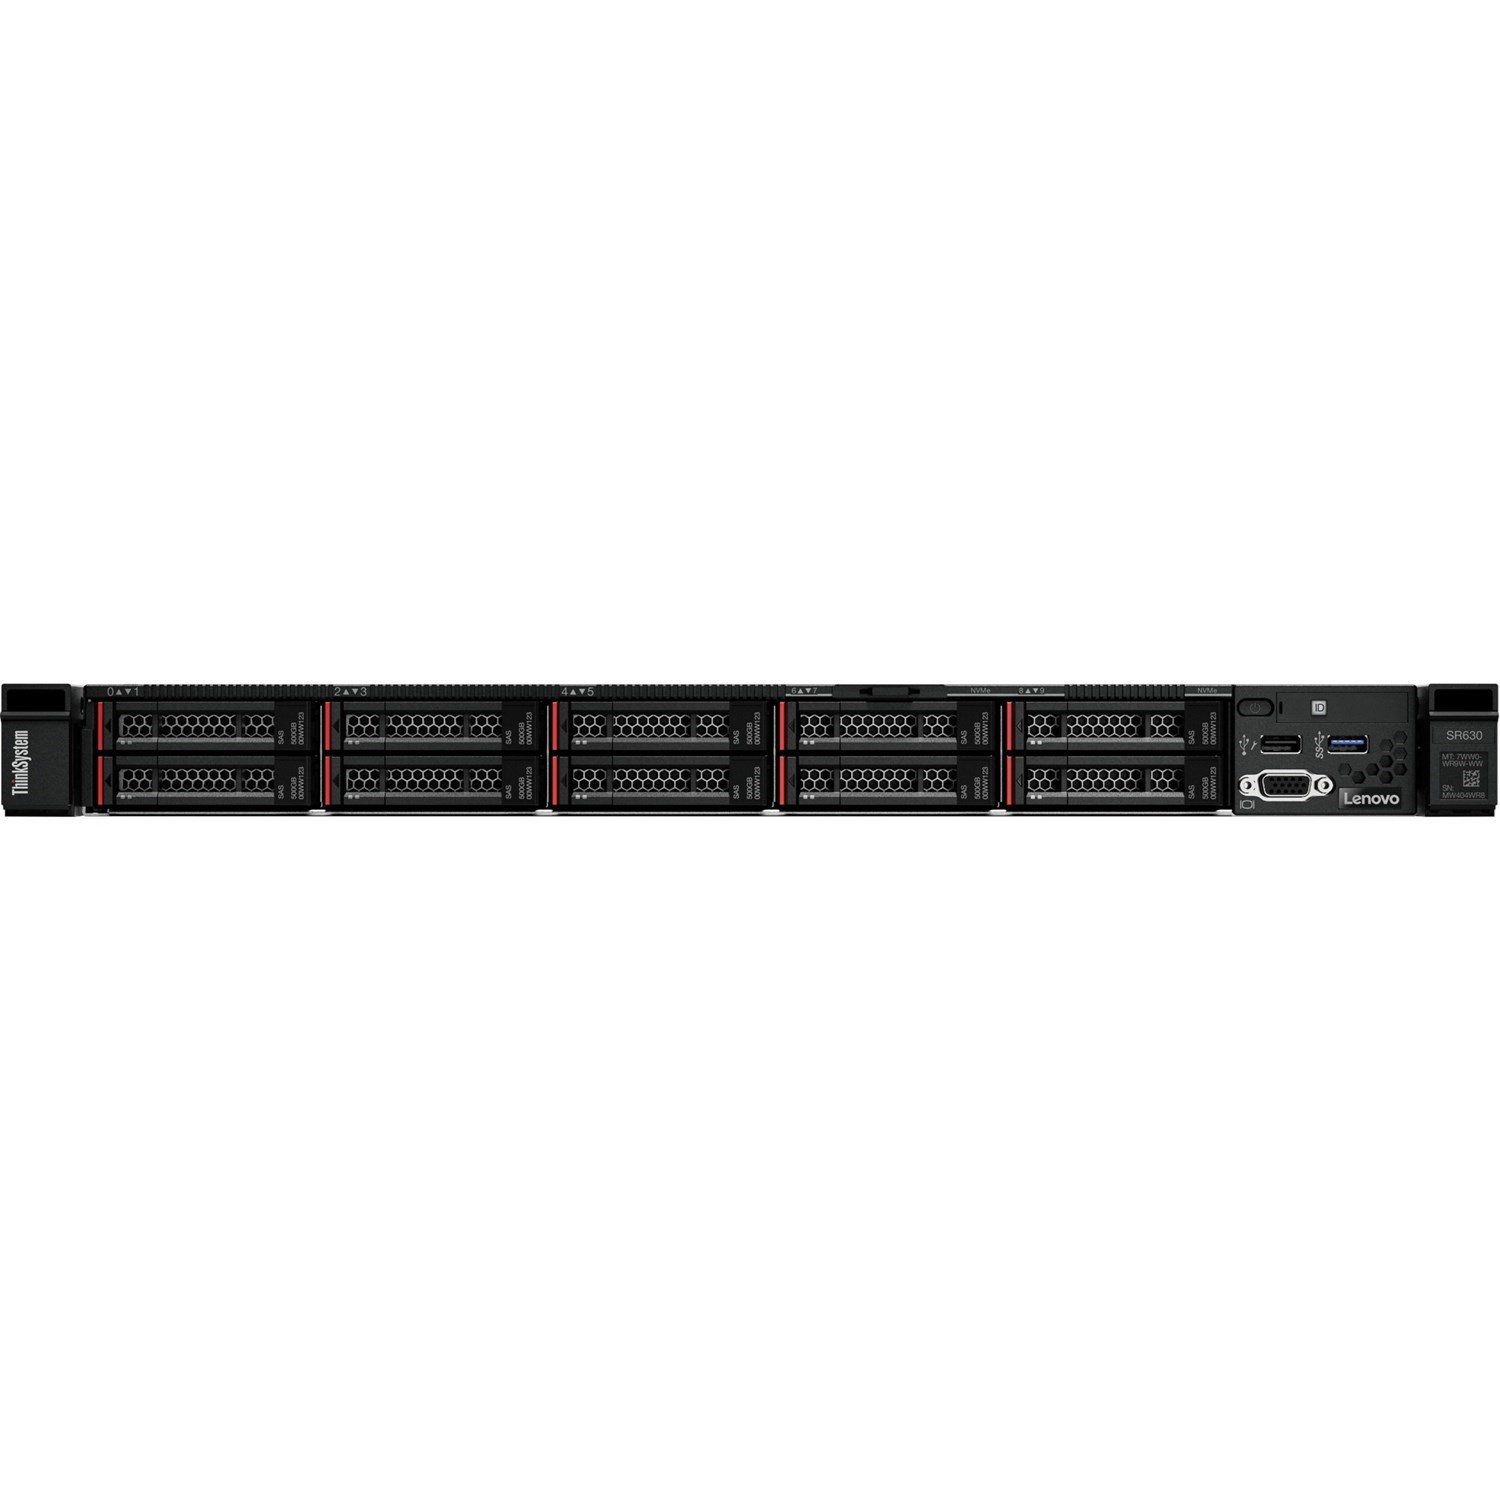 Rack Mounted/Lenovo: THINKSYSTEM, SR630, 4110X1, 16GX1, 